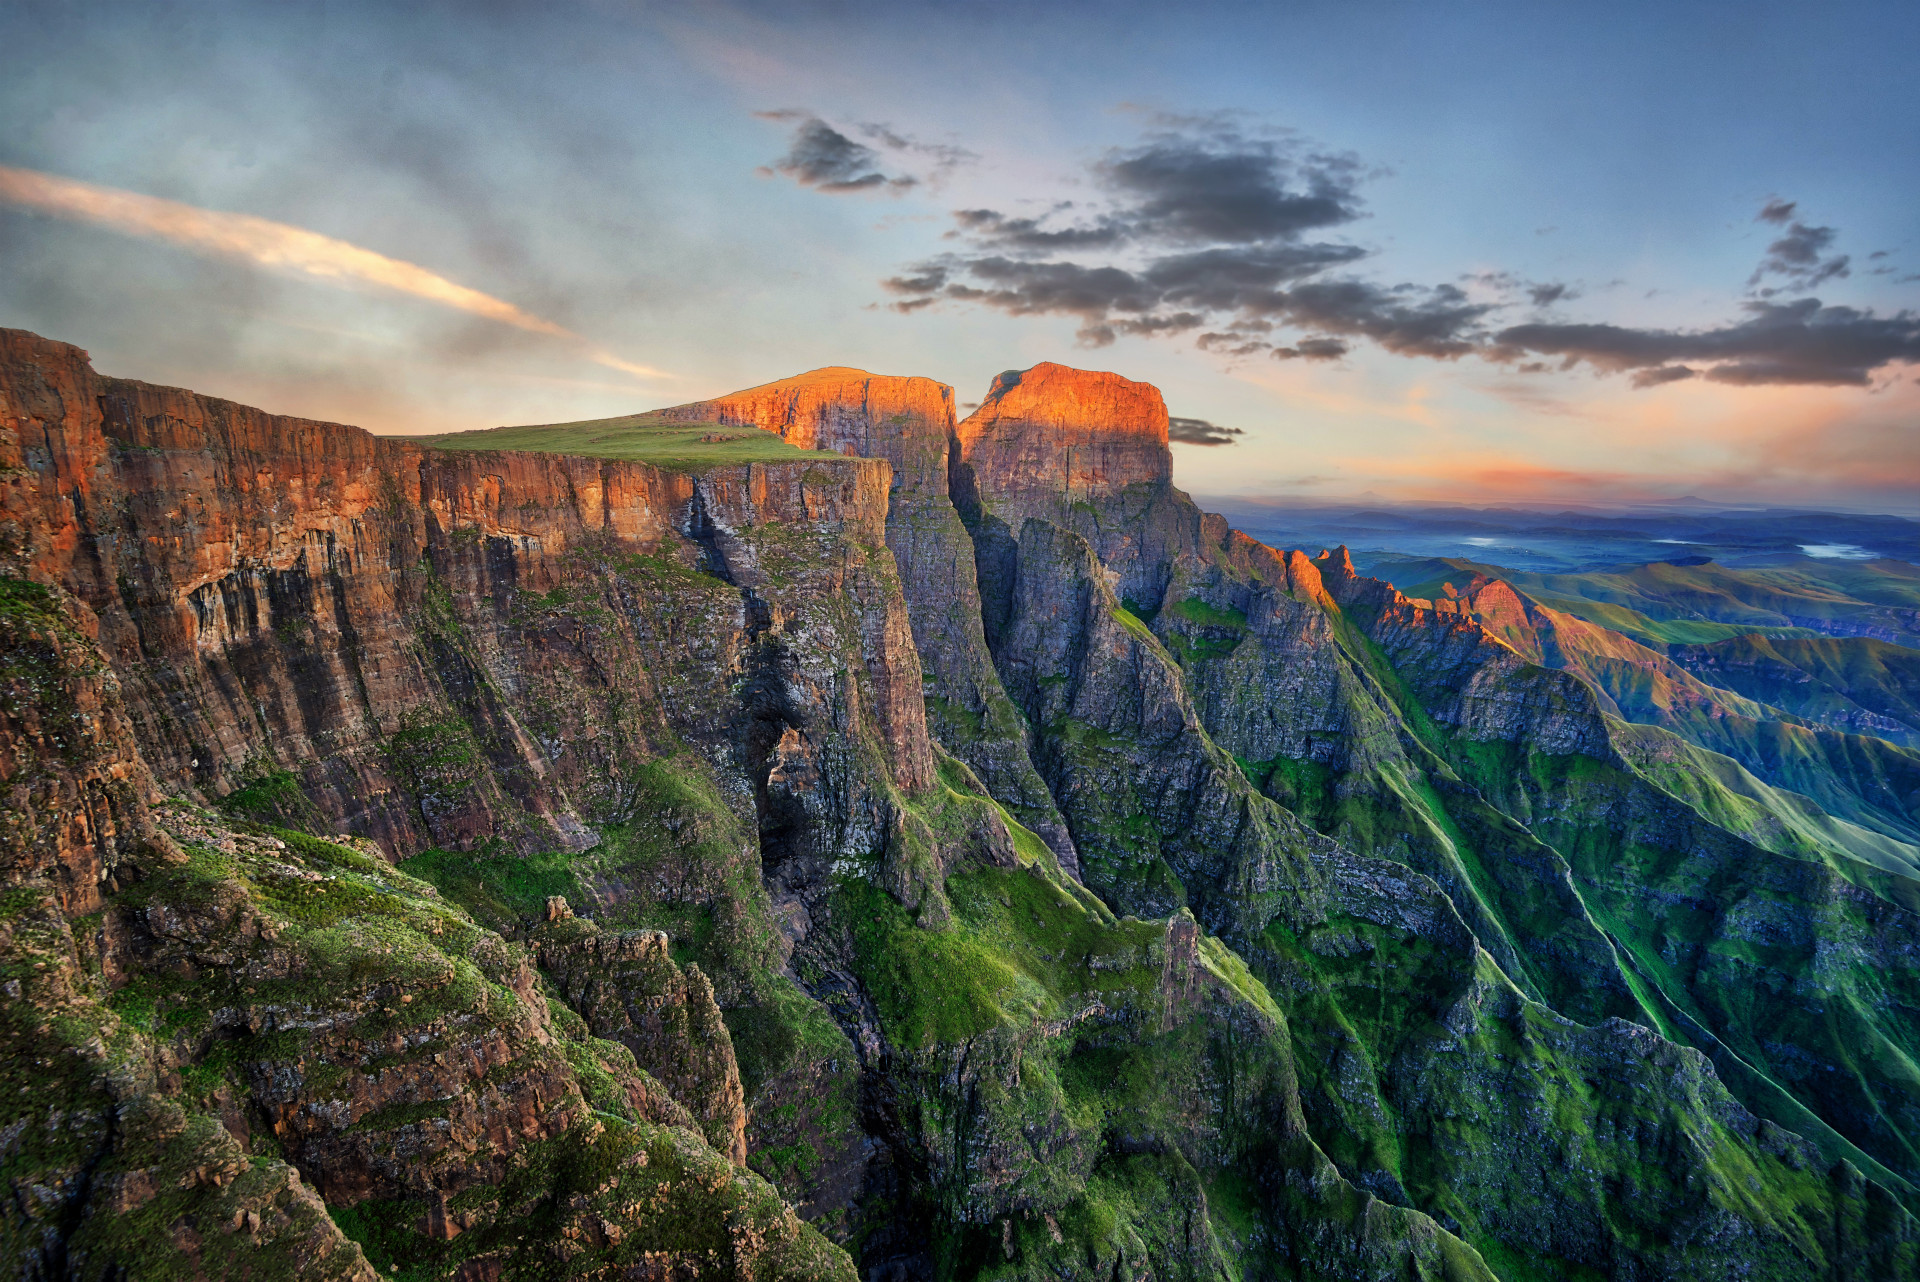 La formation rocheuse appelée l'amphithéâtre est située dans le nord du Drakensberg au KwaZulu-Natal. Cette falaise spectaculaire s'étend sur 5 km (3,1 miles), et ses falaises s’élèvent à environ 1 220 m (4 002 pieds). Il est considéré comme l'un des panoramas les plus spectaculaires au monde.<p><a href="https://www.msn.com/fr-fr/community/channel/vid-7xx8mnucu55yw63we9va2gwr7uihbxwc68fxqp25x6tg4ftibpra?cvid=94631541bc0f4f89bfd59158d696ad7e">Suivez-nous et accédez tous les jours à du contenu exclusif</a></p>